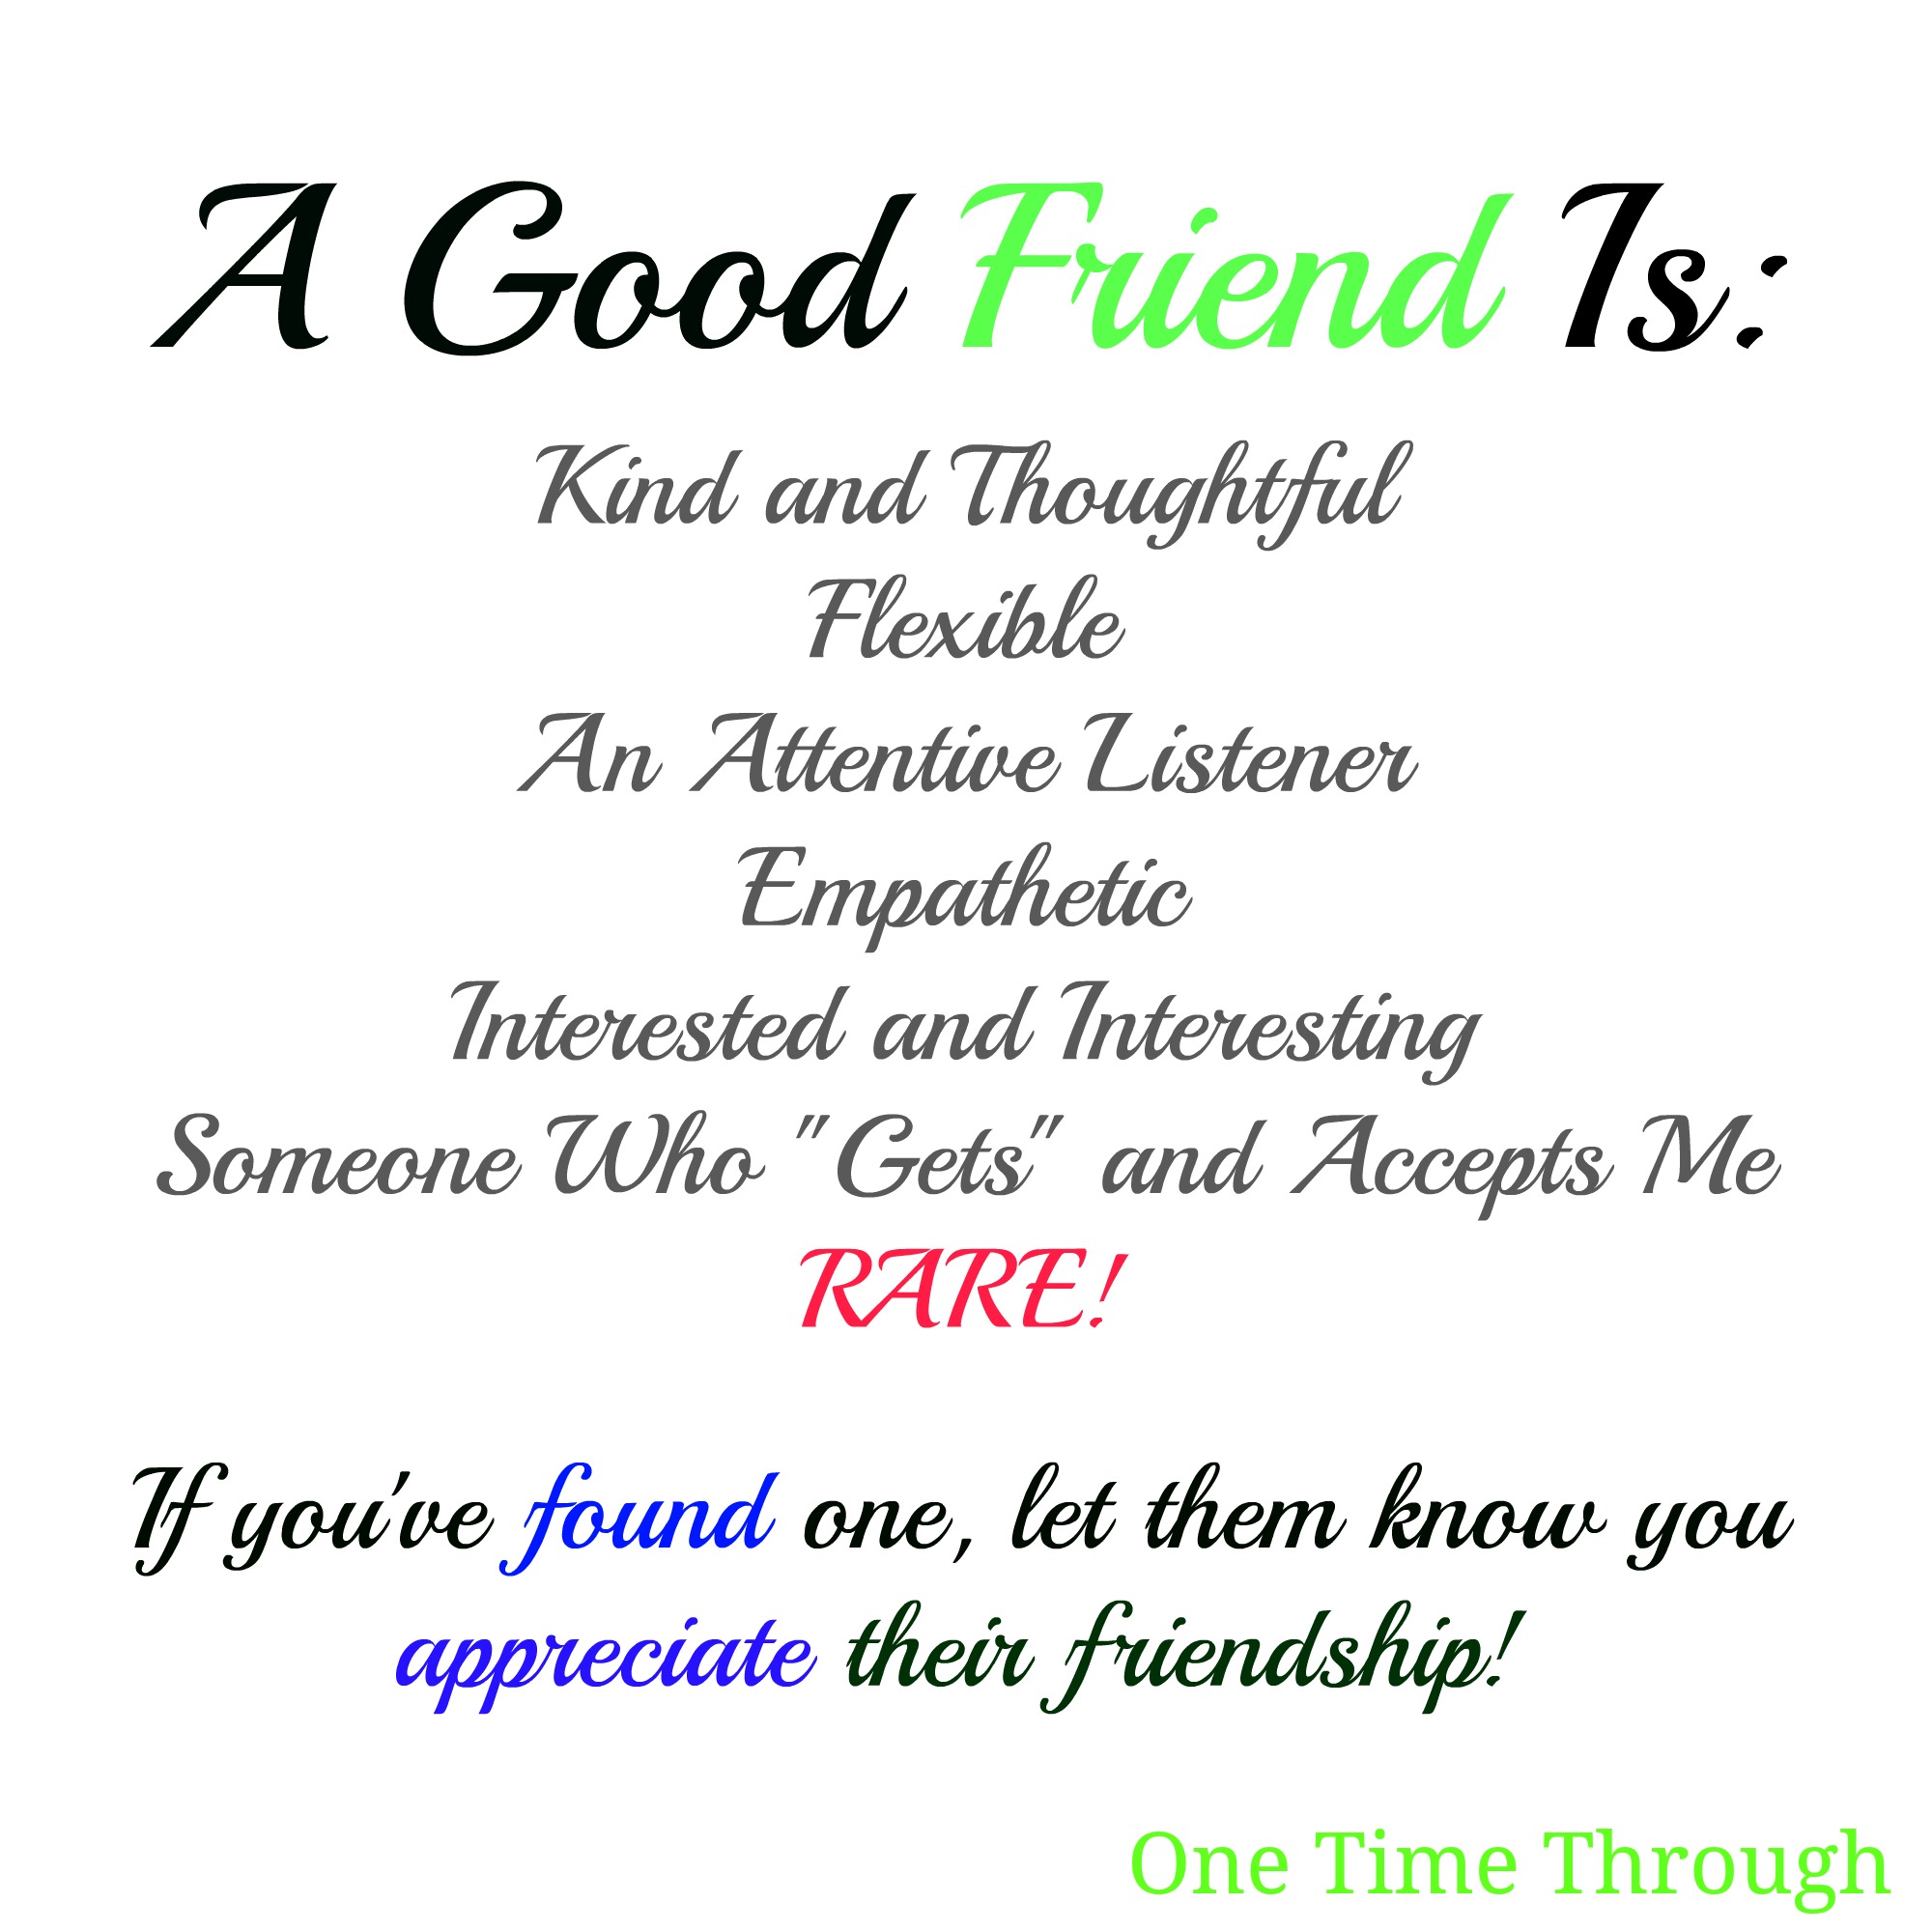 Como alguém pode ser um bom amigo?